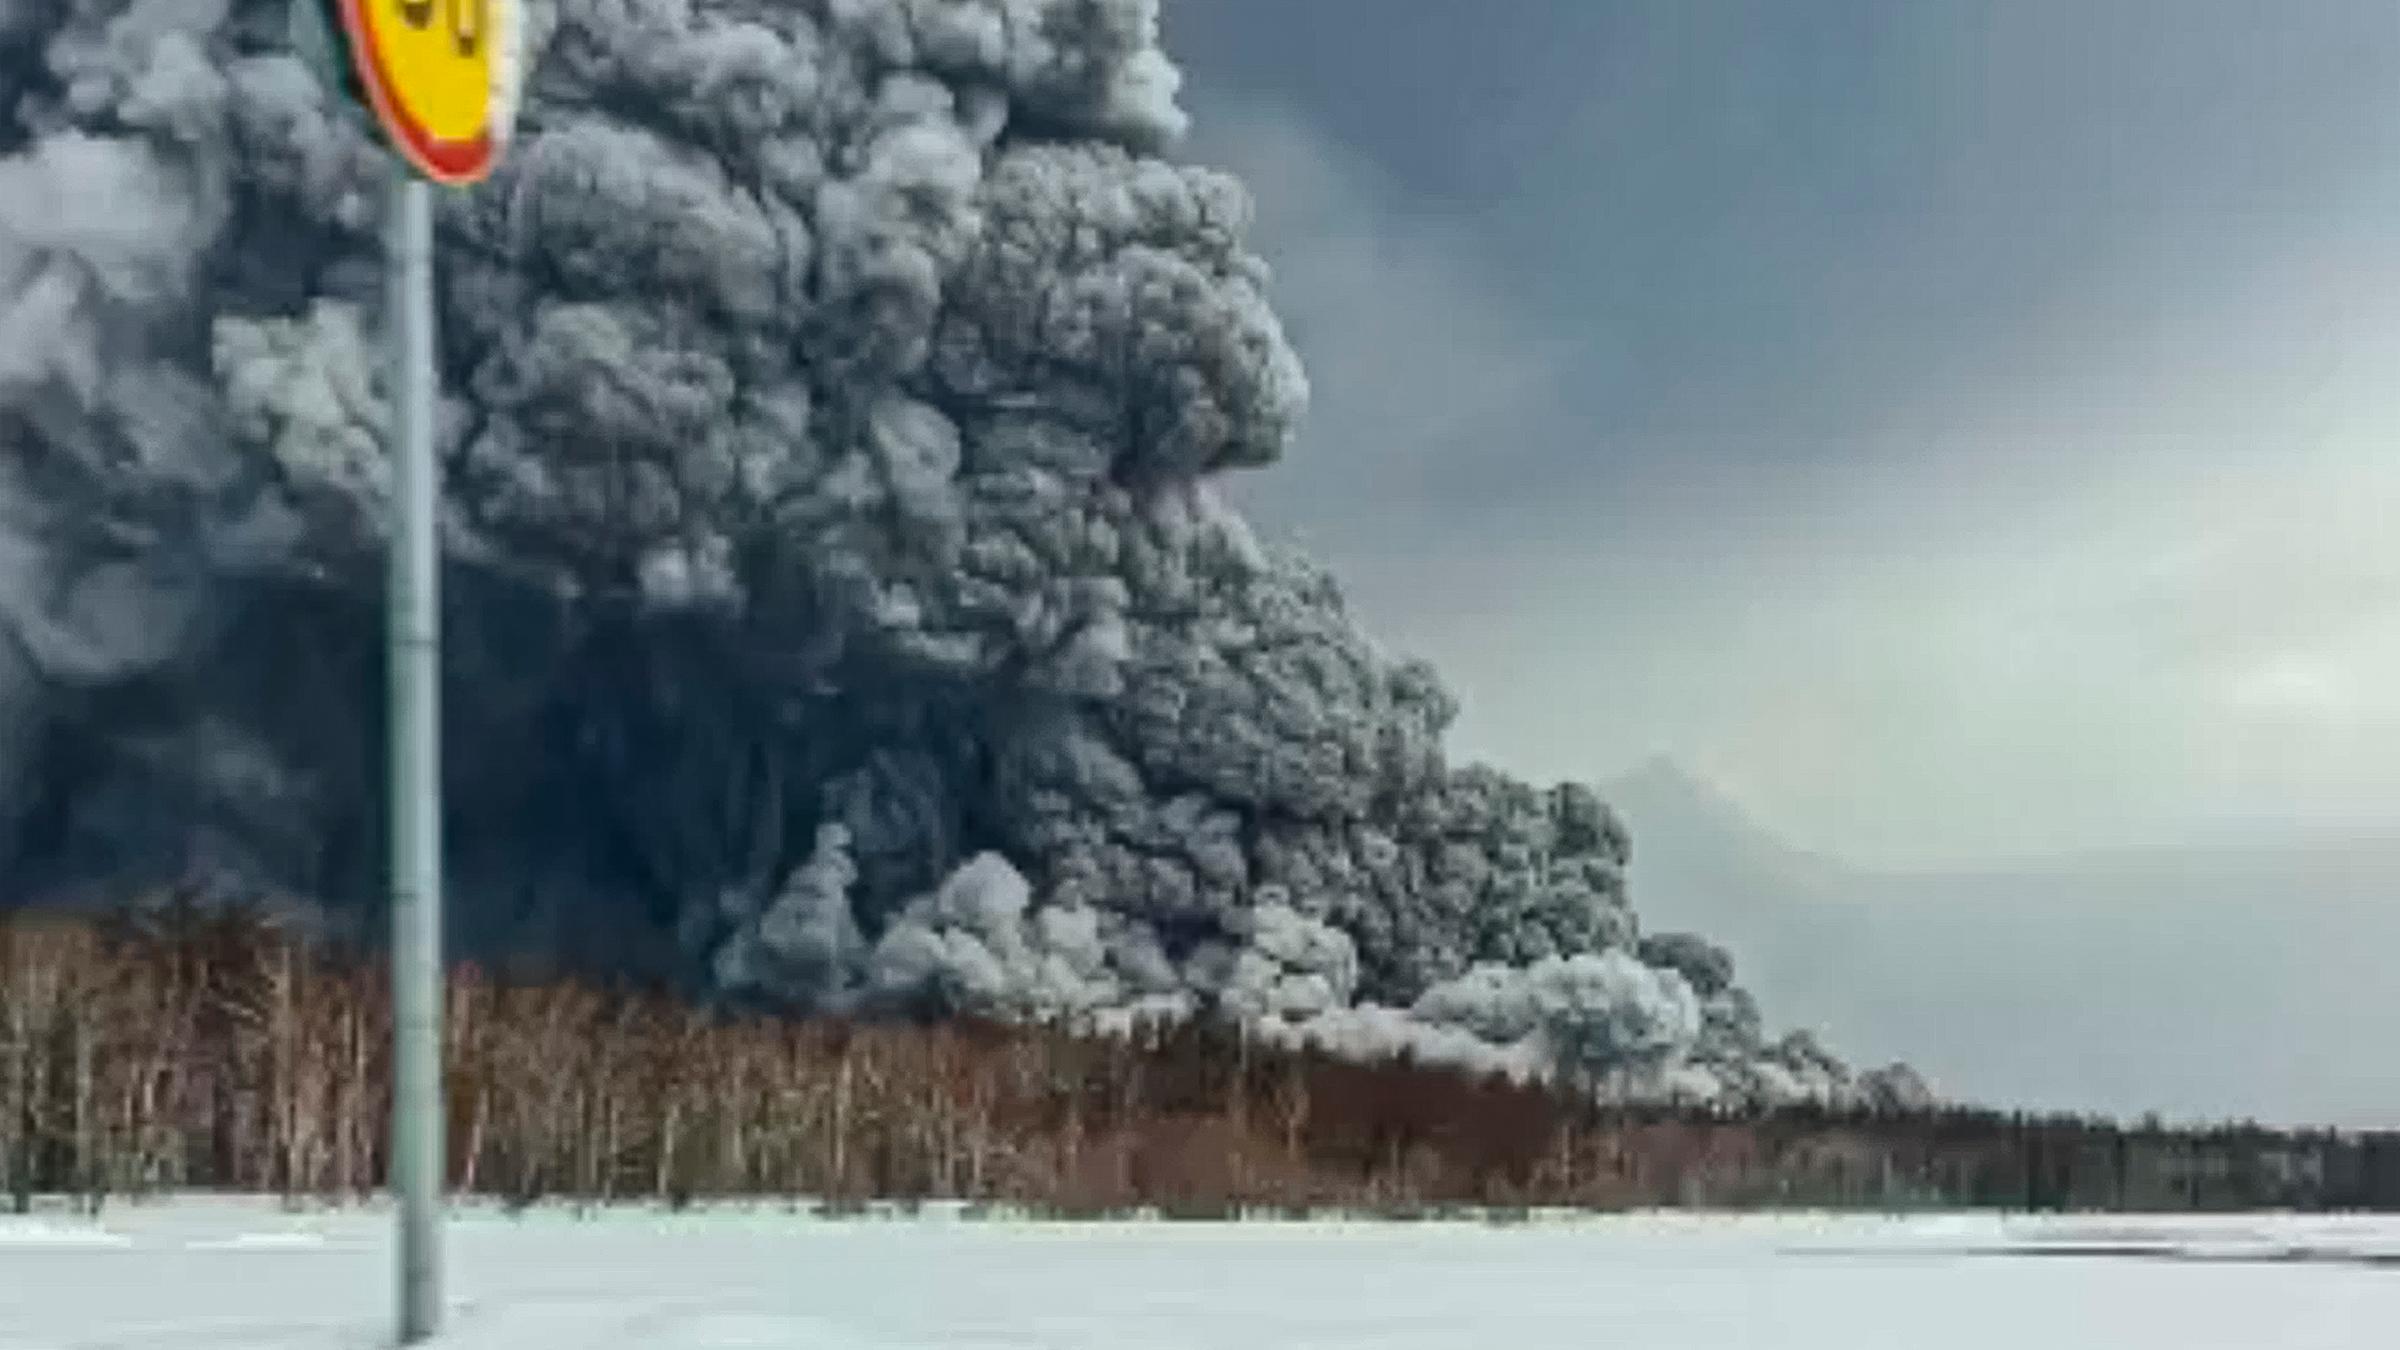 Russland, Kamtschatka: Rauch und Asche sind während des Ausbruchs des Vulkans Schiwelutsch auf der Halbinsel Kamtschatka in Russland zu sehen.